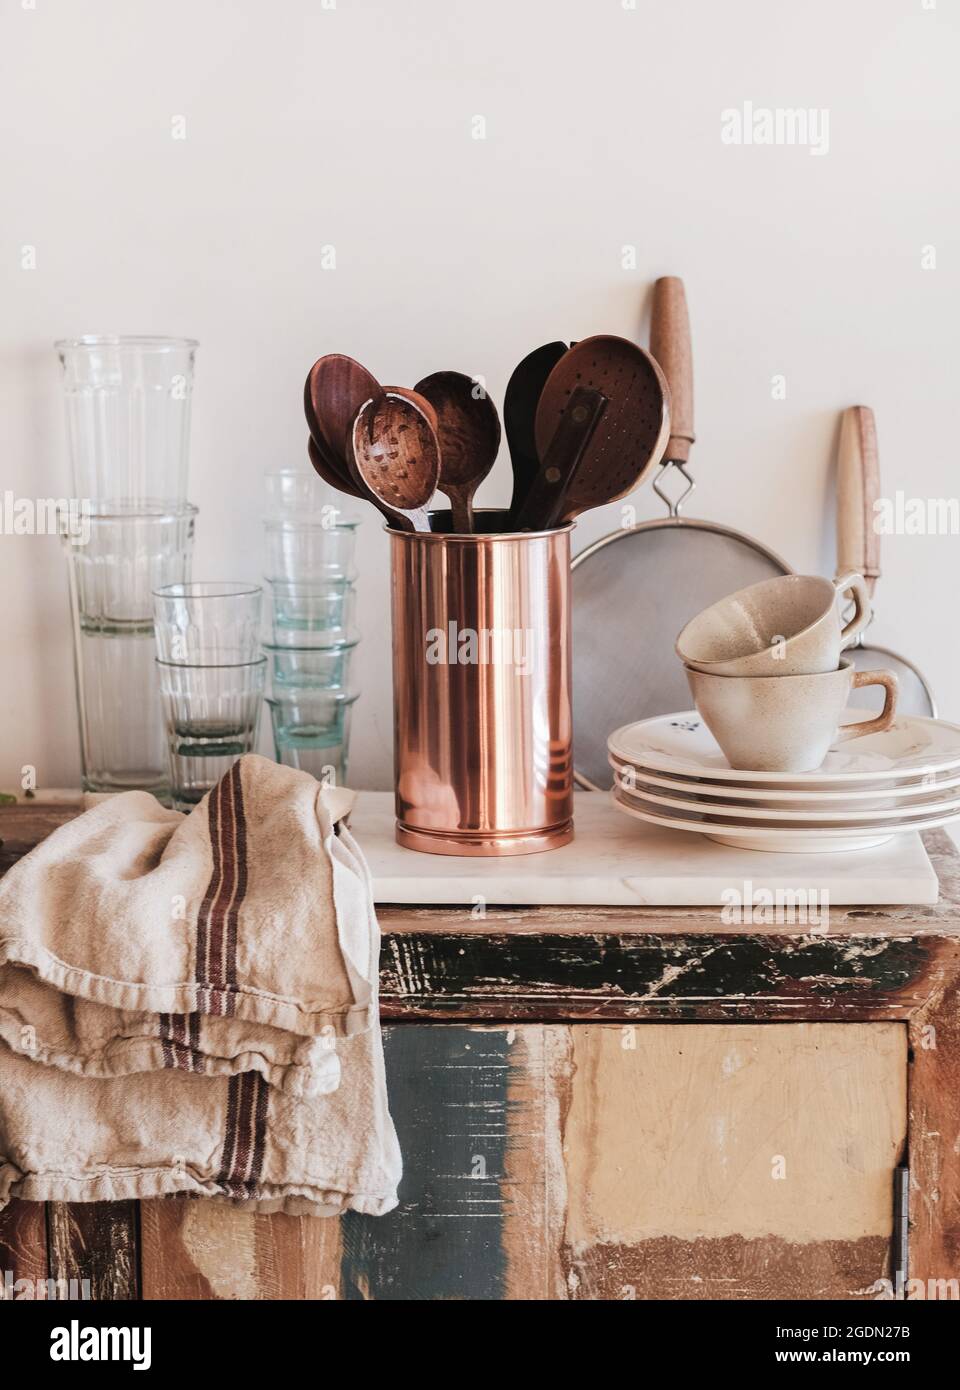 Utensili da cucina, vetreria e stoviglie su un piano cucina rustico Foto Stock